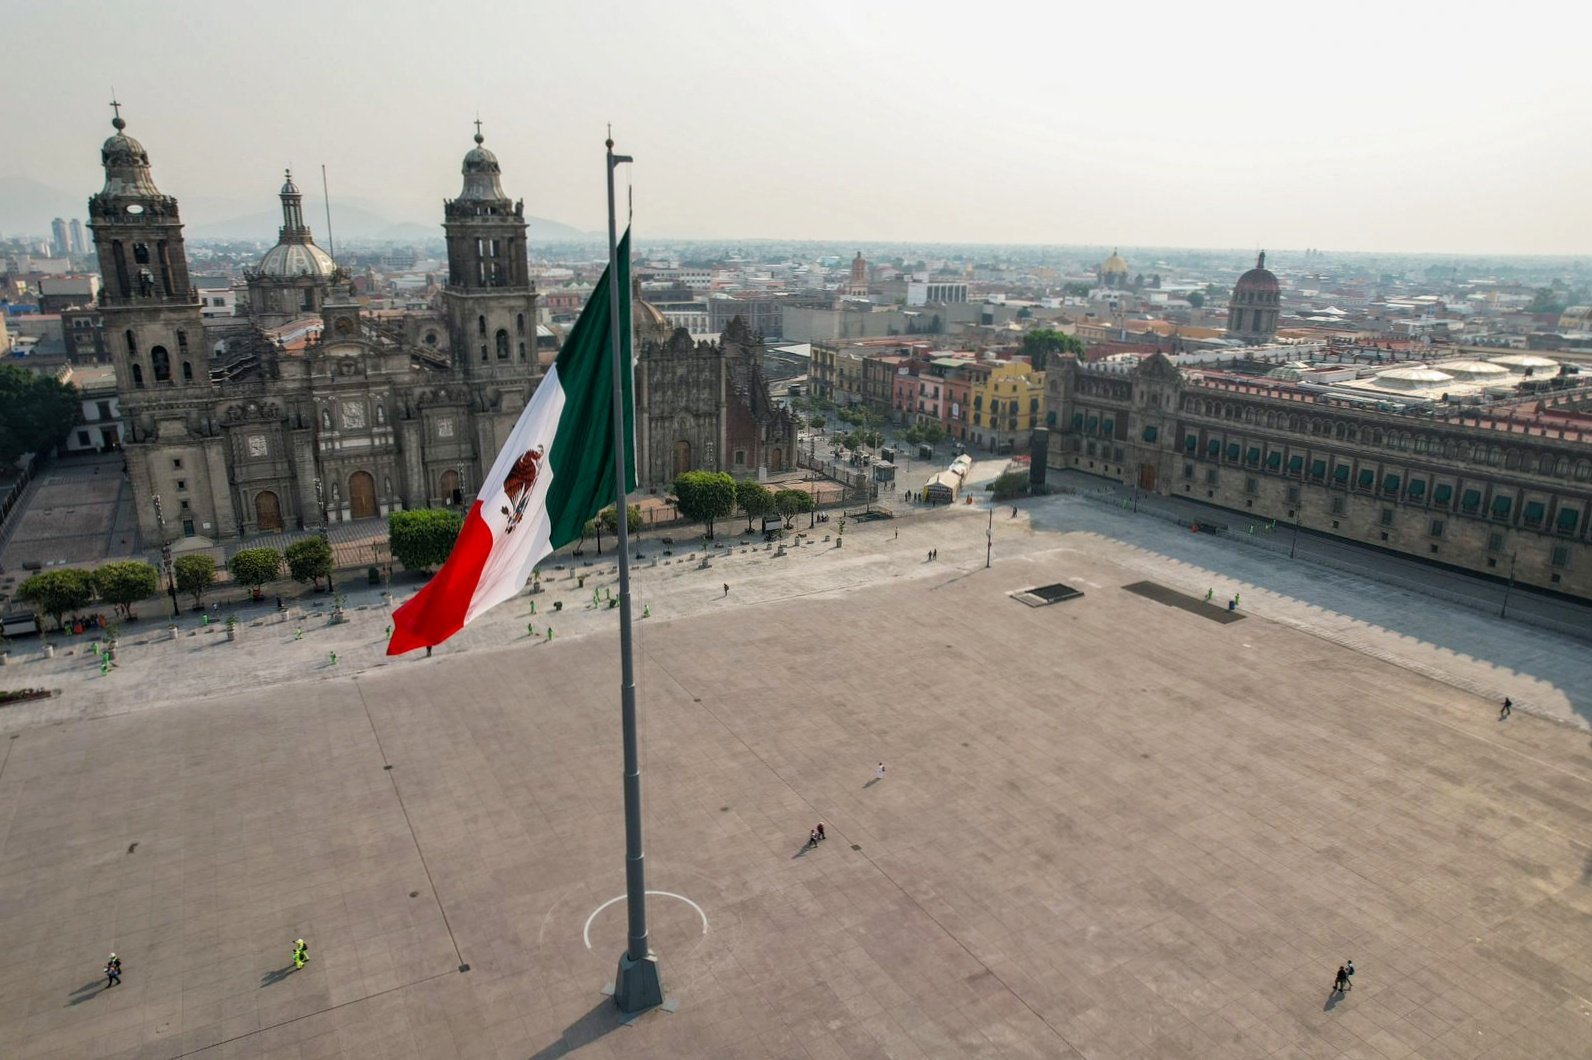 19.000 personas participan en el evento First Walk en la zona peatonal del Zócalo en la Ciudad de México, según Forbes México.